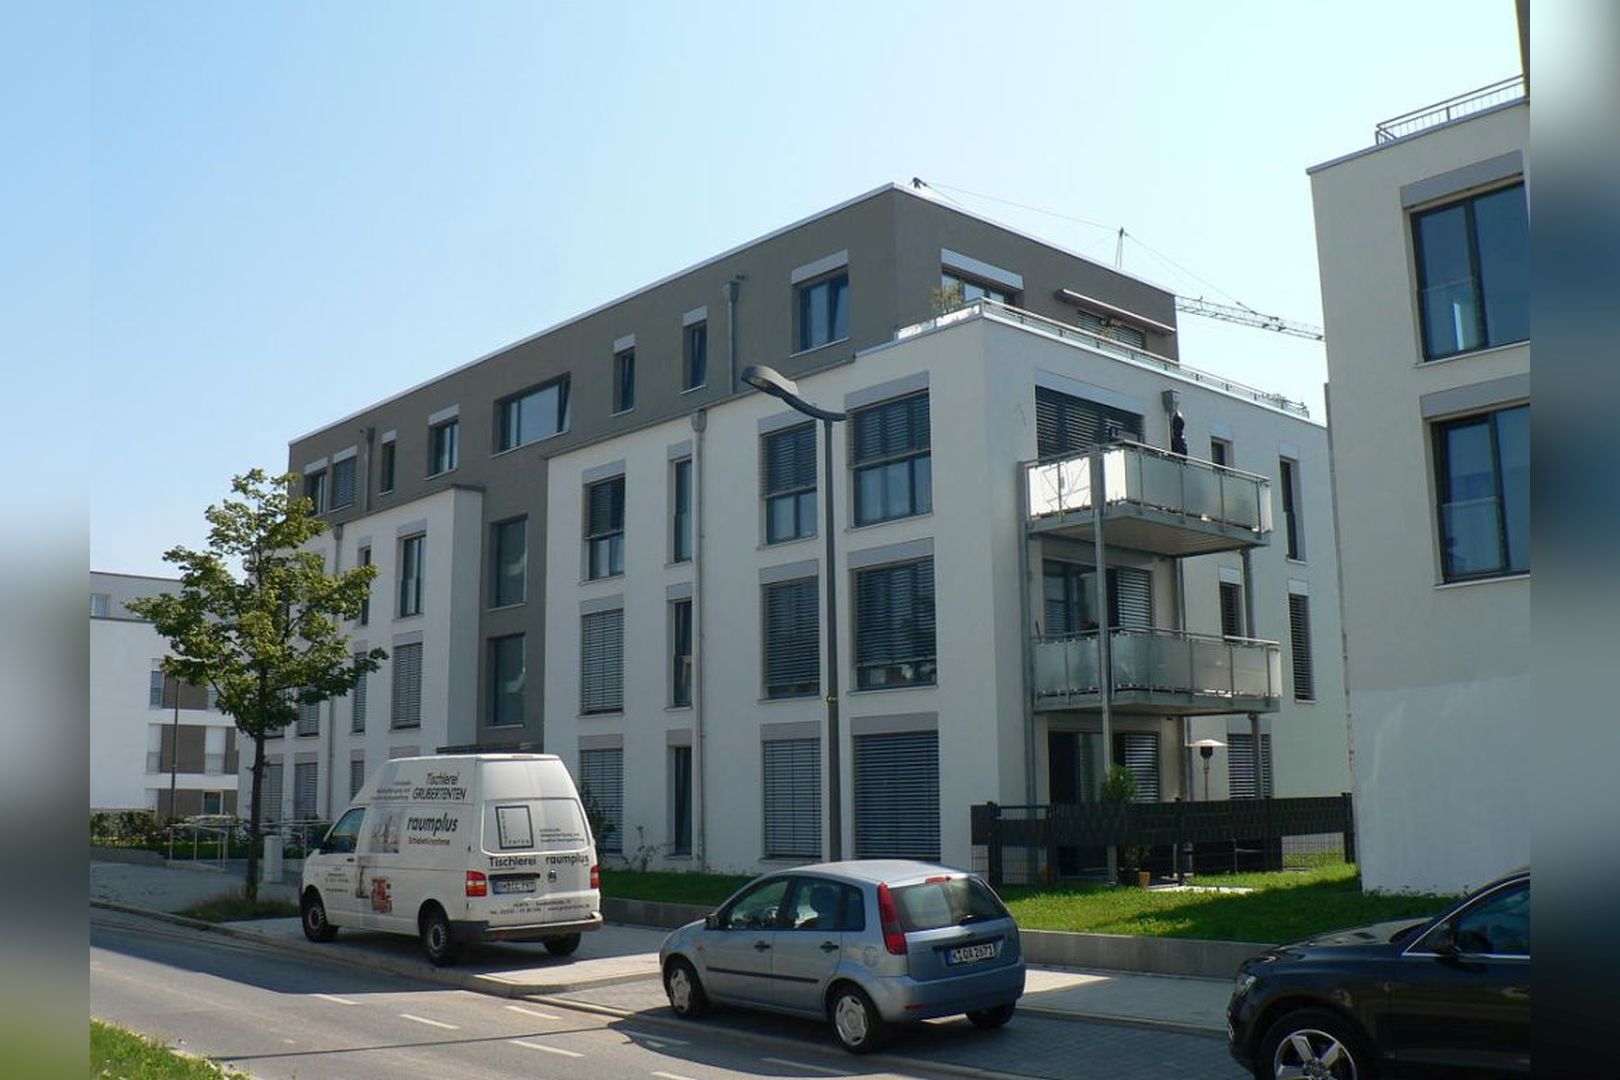 Immobilie Nr.Köln 100 - evohaus-Energie-autarkes-Wohnquartier: Einfamilienhäuser in Reihe und Eigentumswohnungen von 2 - 5 Zimmern in mehreren Häusern. Und das: weitestgehend Energie-autark und KfW-55-förderfähig!   - Bild 16.jpg